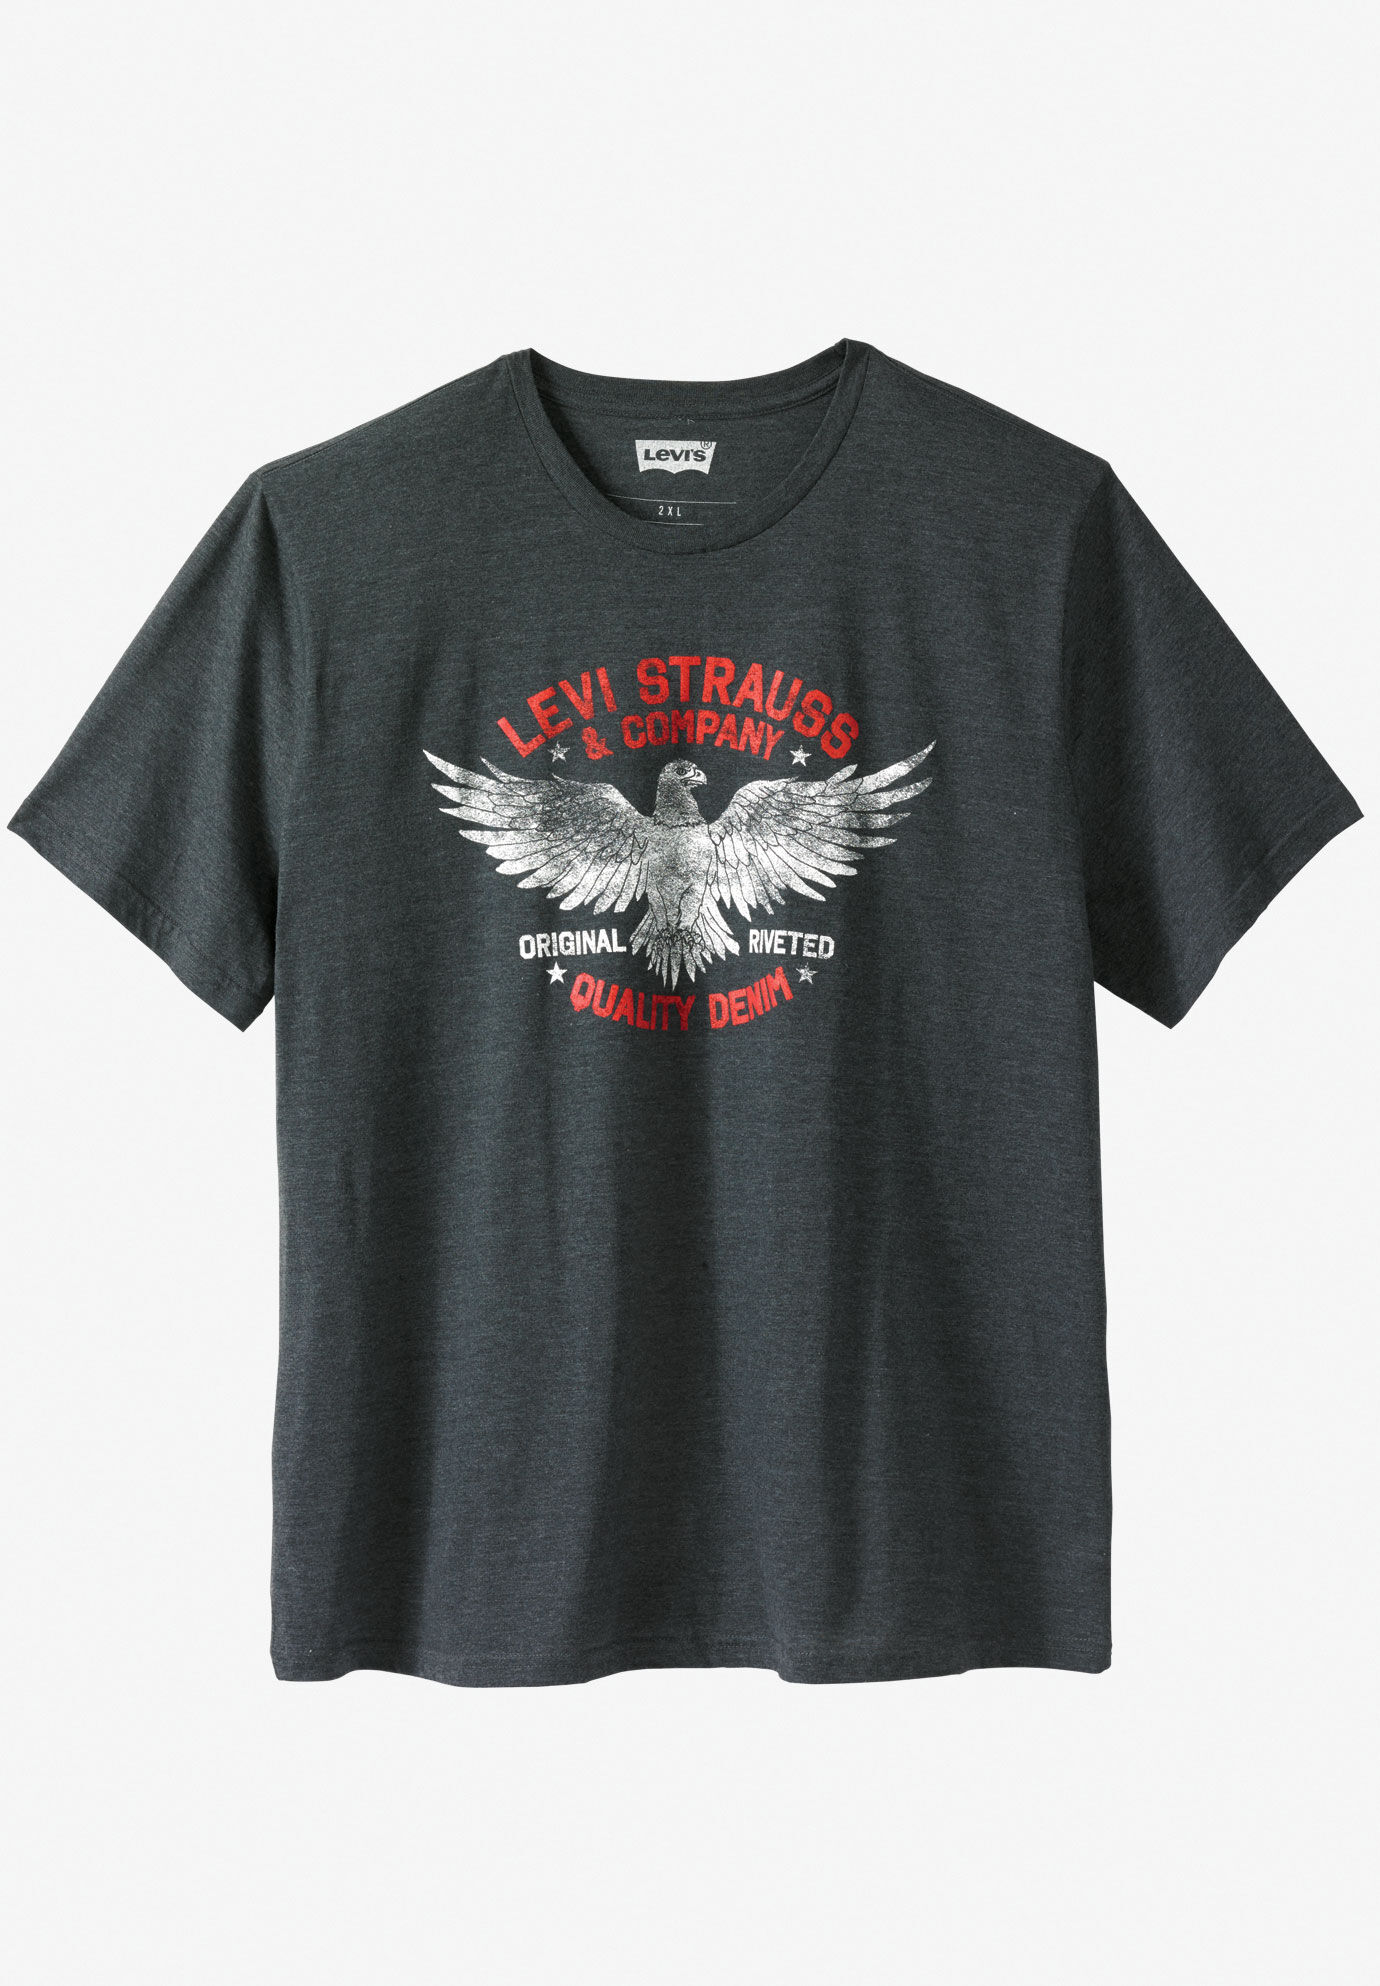 levis eagle t shirt